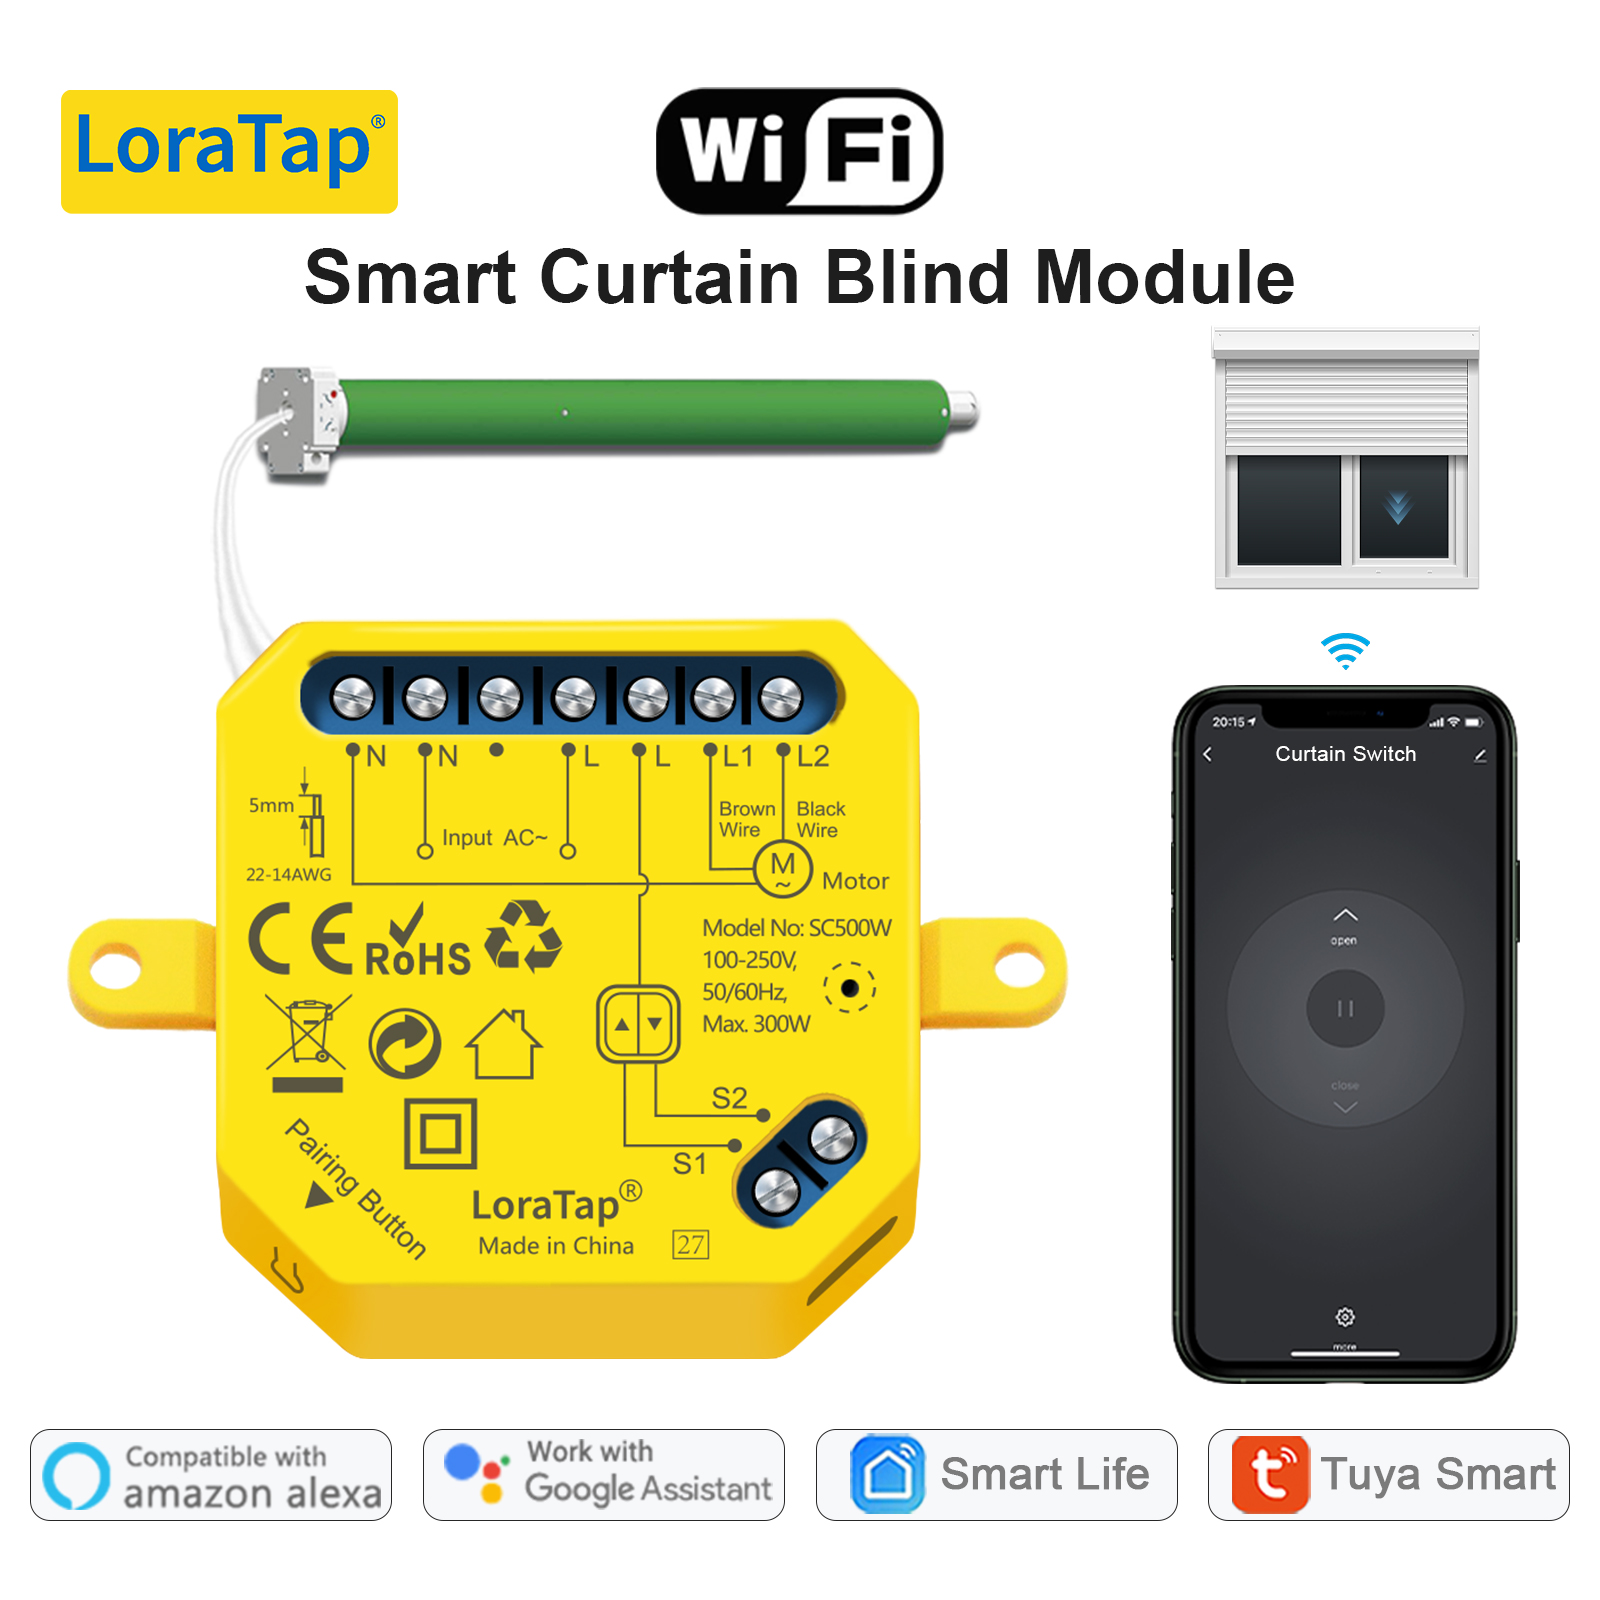 Modulo Interruptor Wifi + Rf Cortina Persiana Smart Life